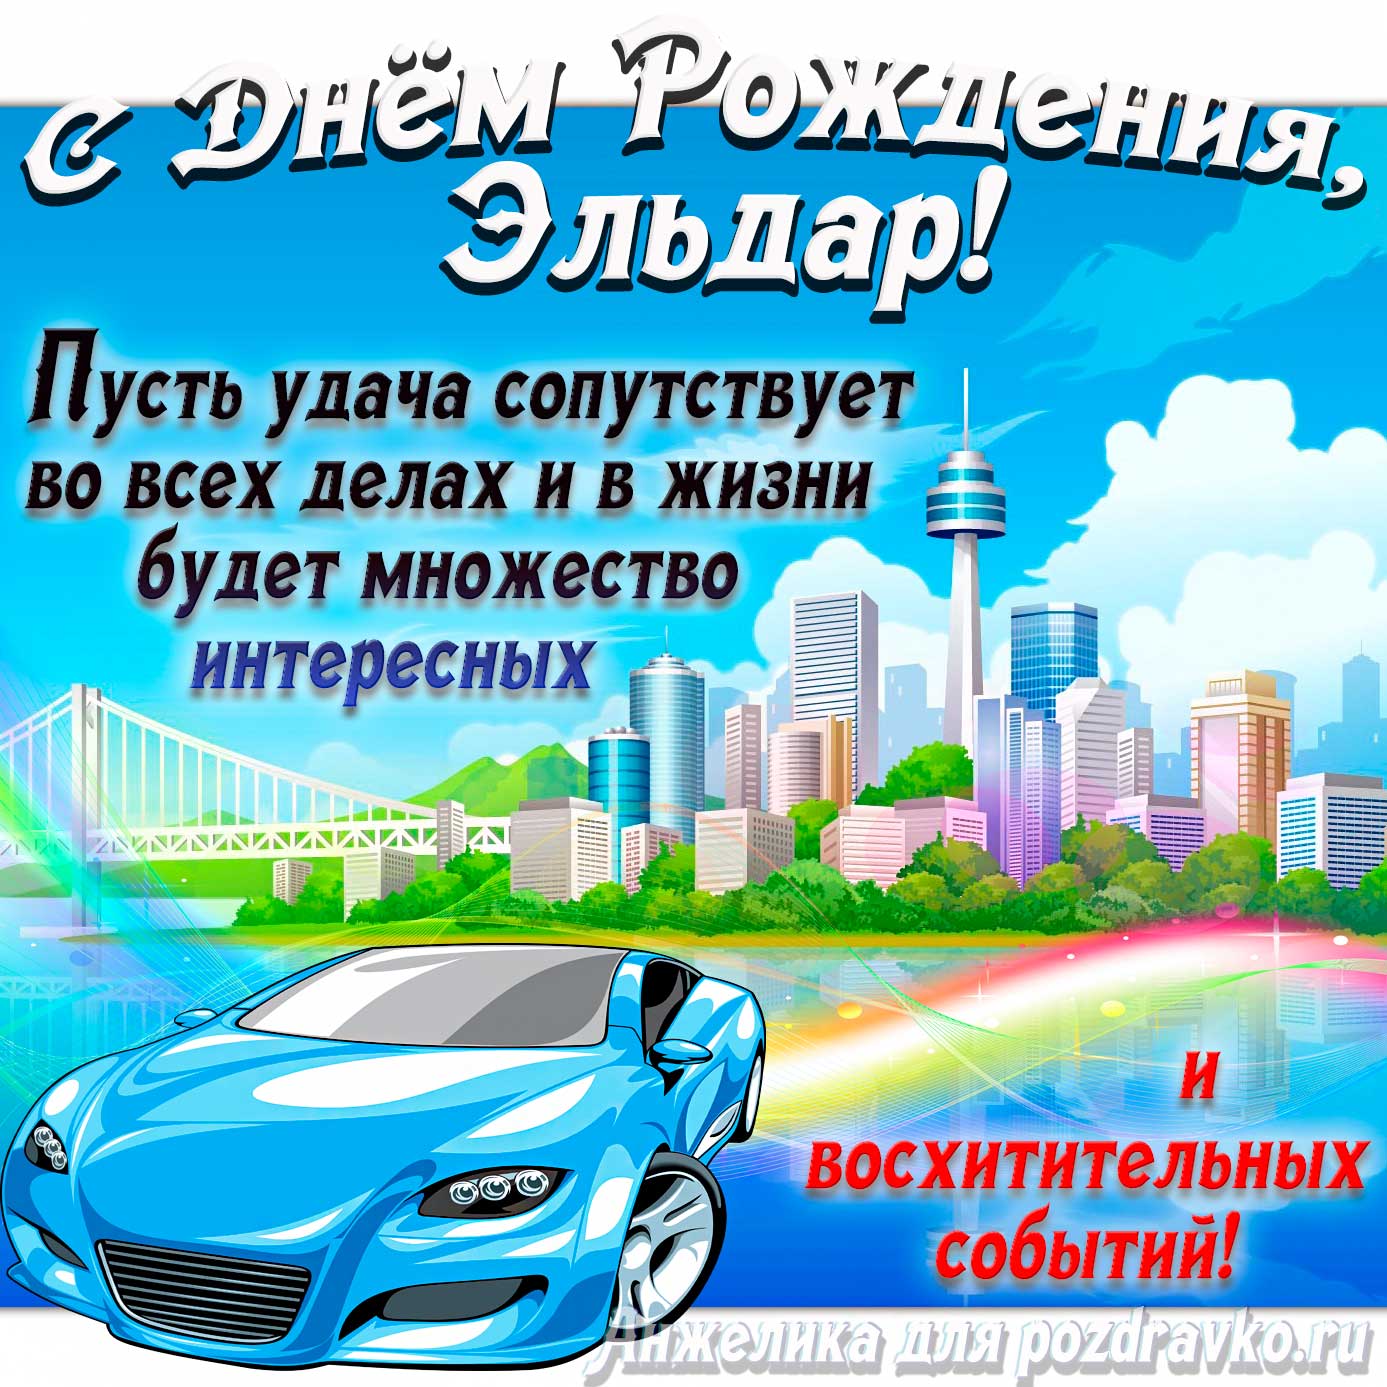 Открытка - с Днём Рождения Эльдар с голубой машиной и пожеланием. Скачать бесплатно или отправить картинку.